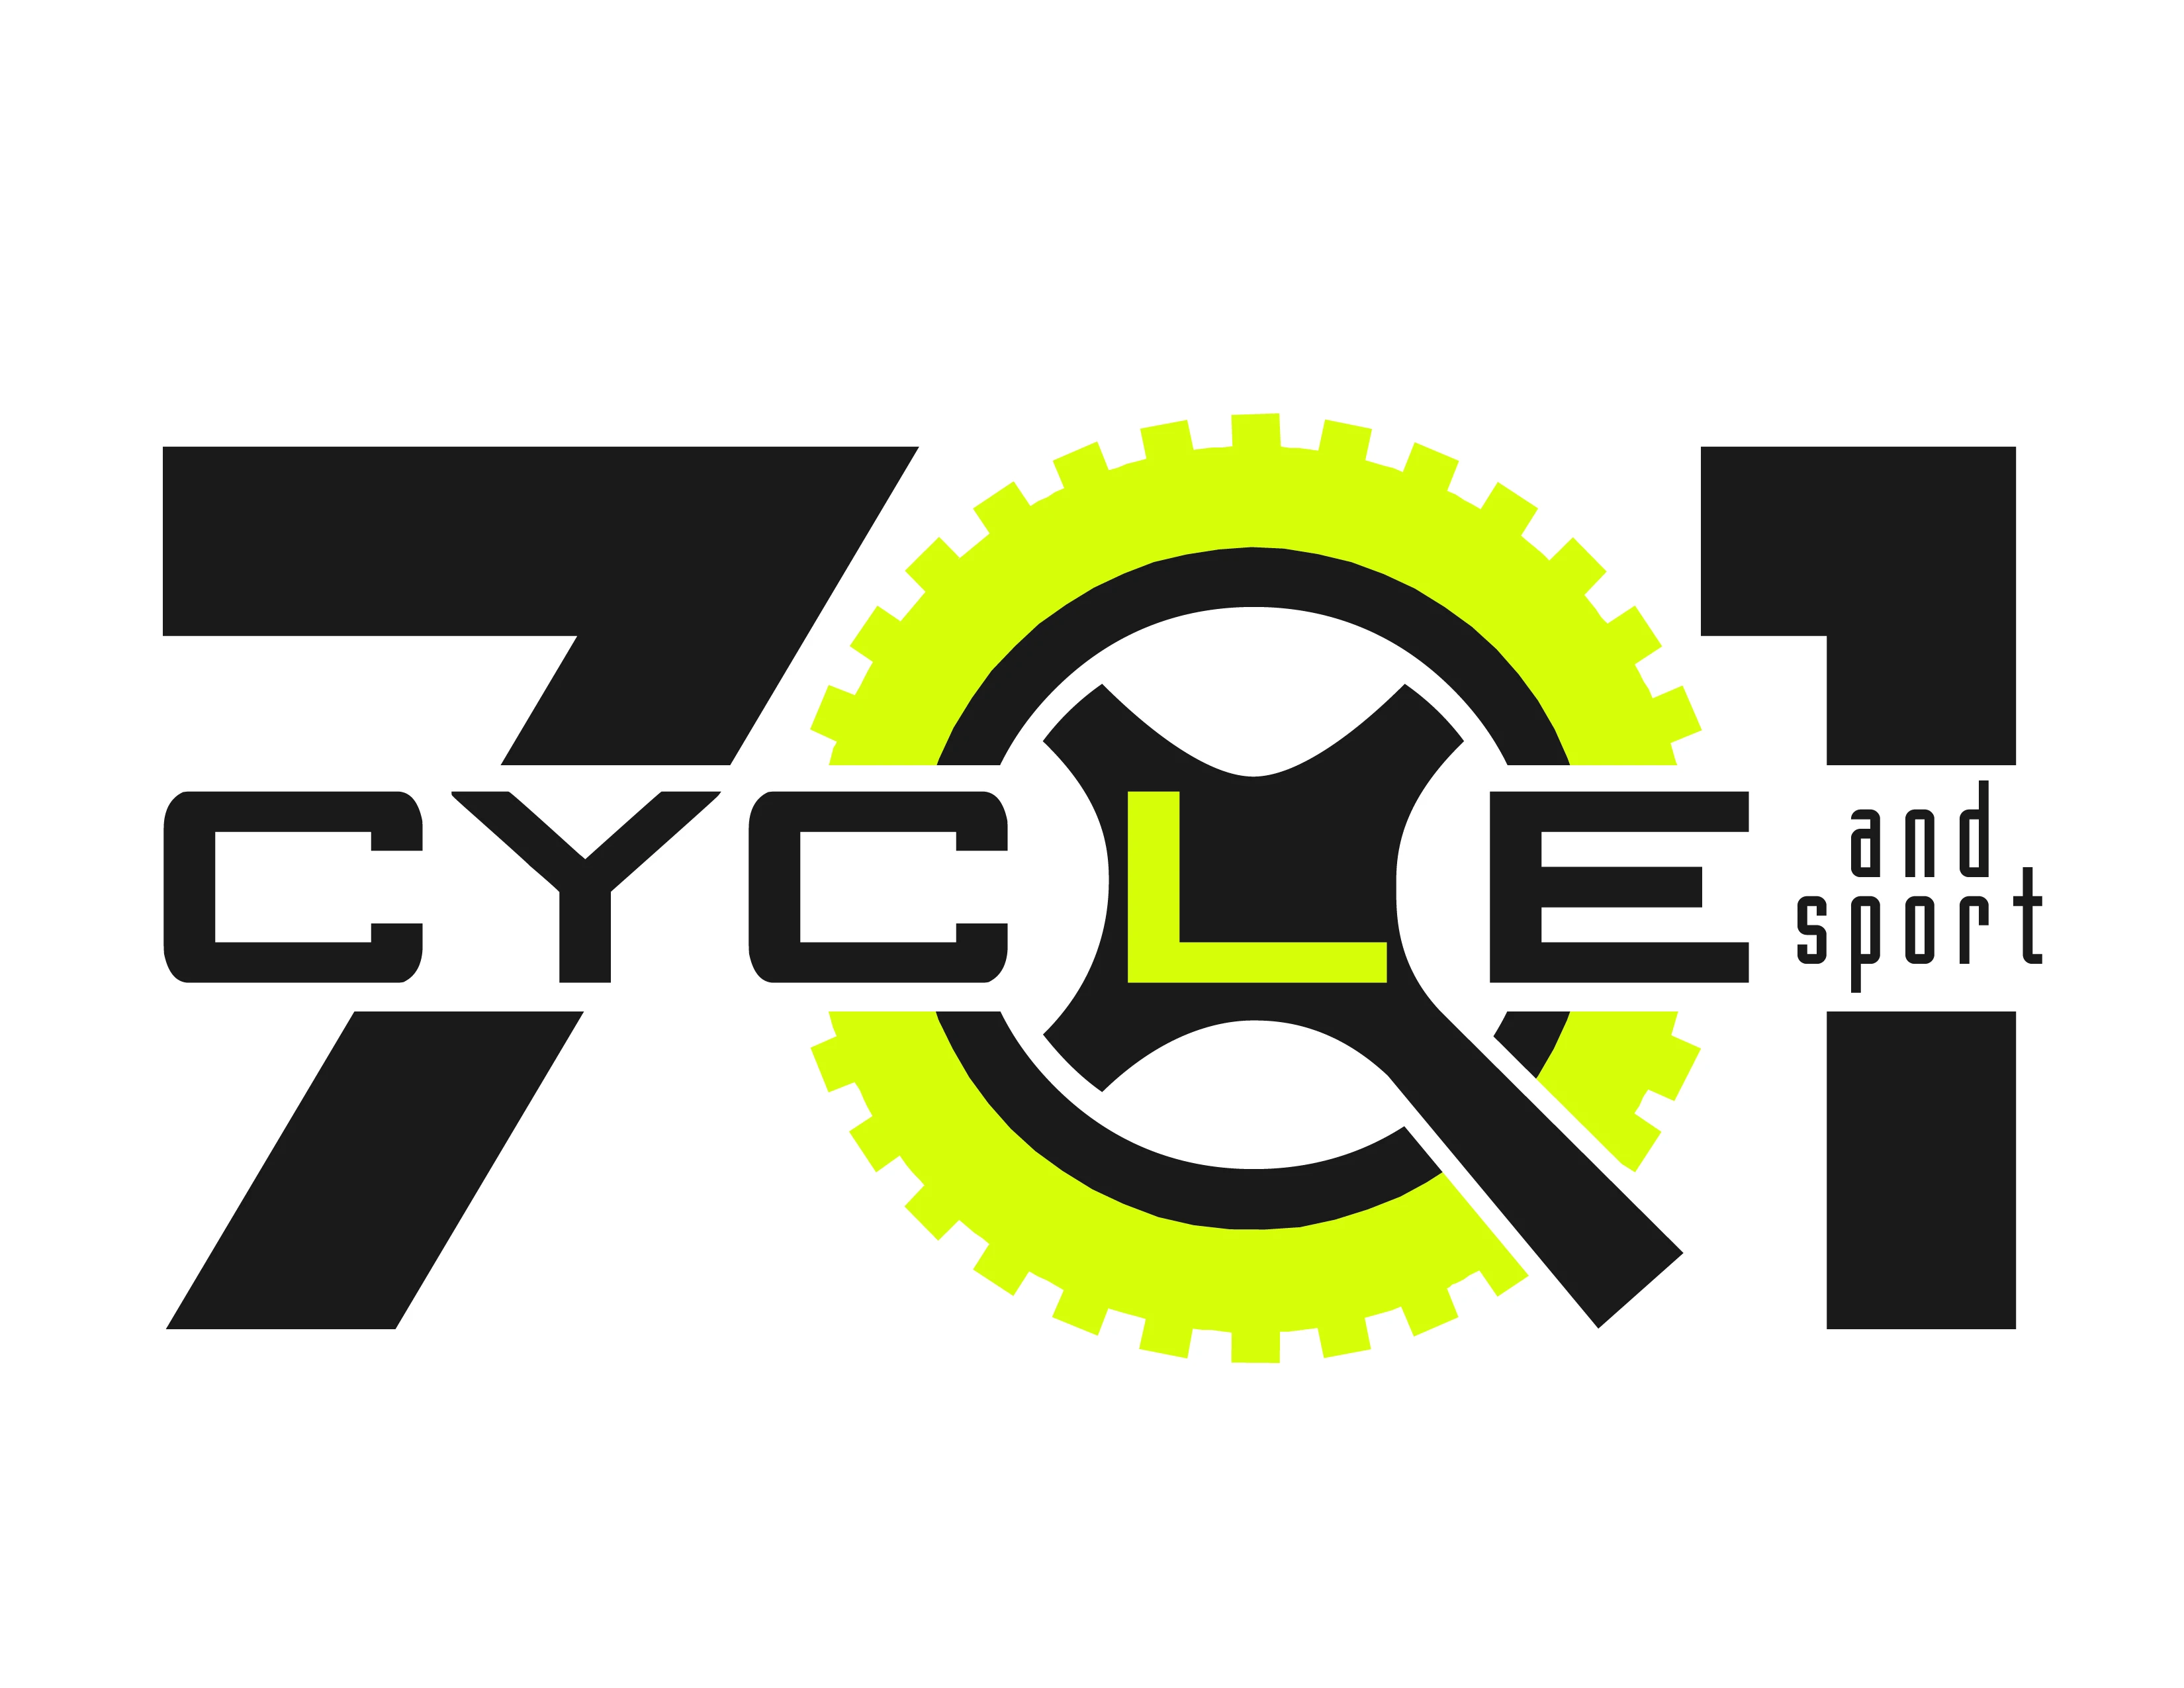 701cycleandsport.com